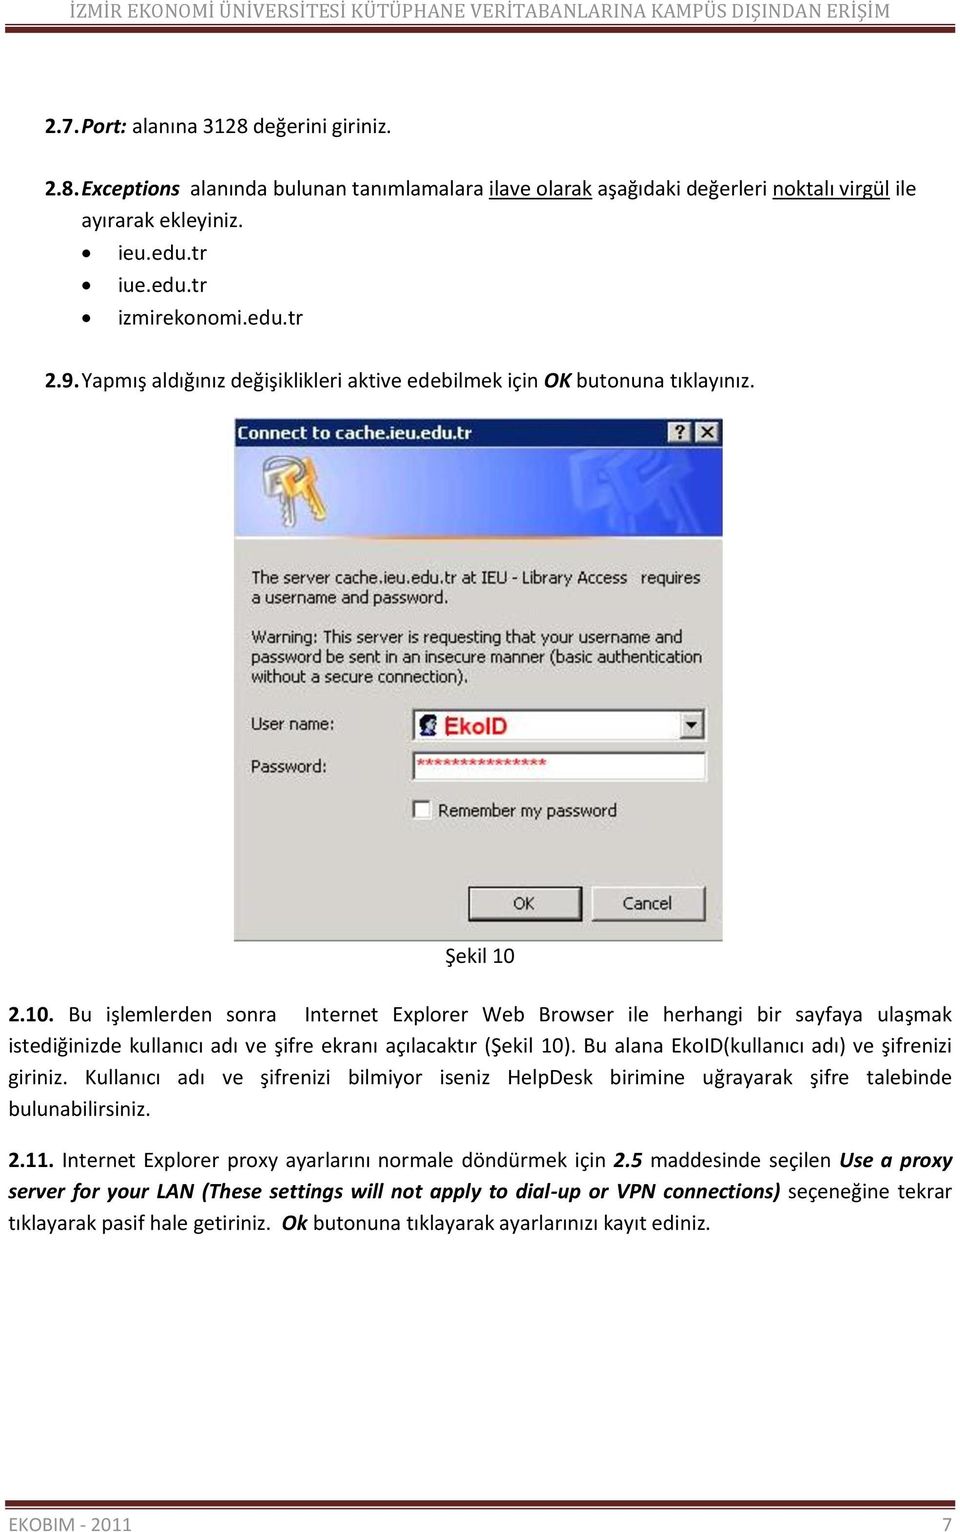 2.10. Bu işlemlerden sonra Internet Explorer Web Browser ile herhangi bir sayfaya ulaşmak istediğinizde kullanıcı adı ve şifre ekranı açılacaktır (Şekil 10).